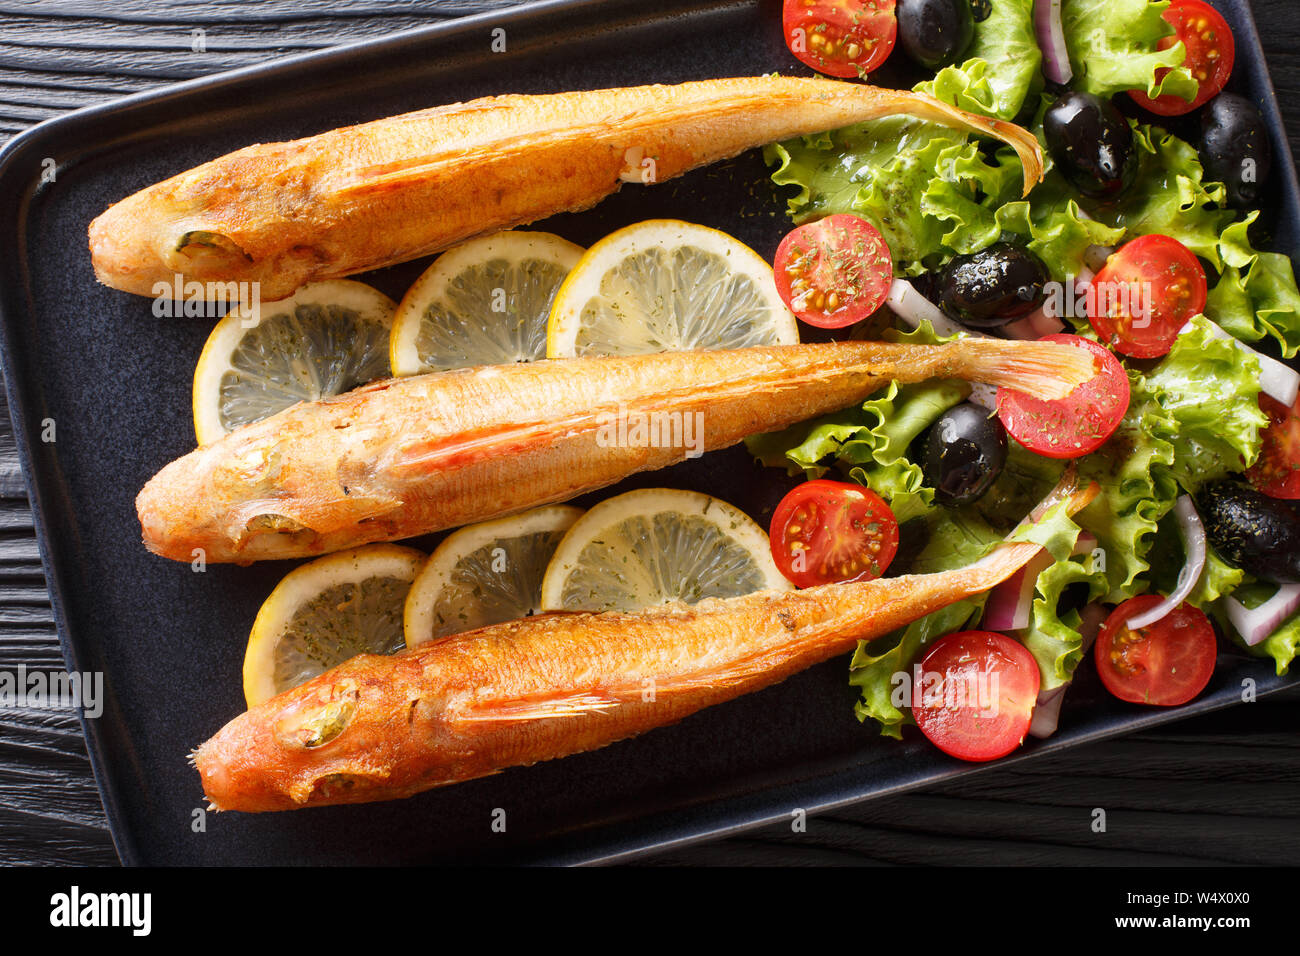 Poisson de mer frits frais et délicieux avec une salade de légumes frais Grondin et citron close-up sur une plaque sur la table. haut horizontale Vue de dessus Banque D'Images